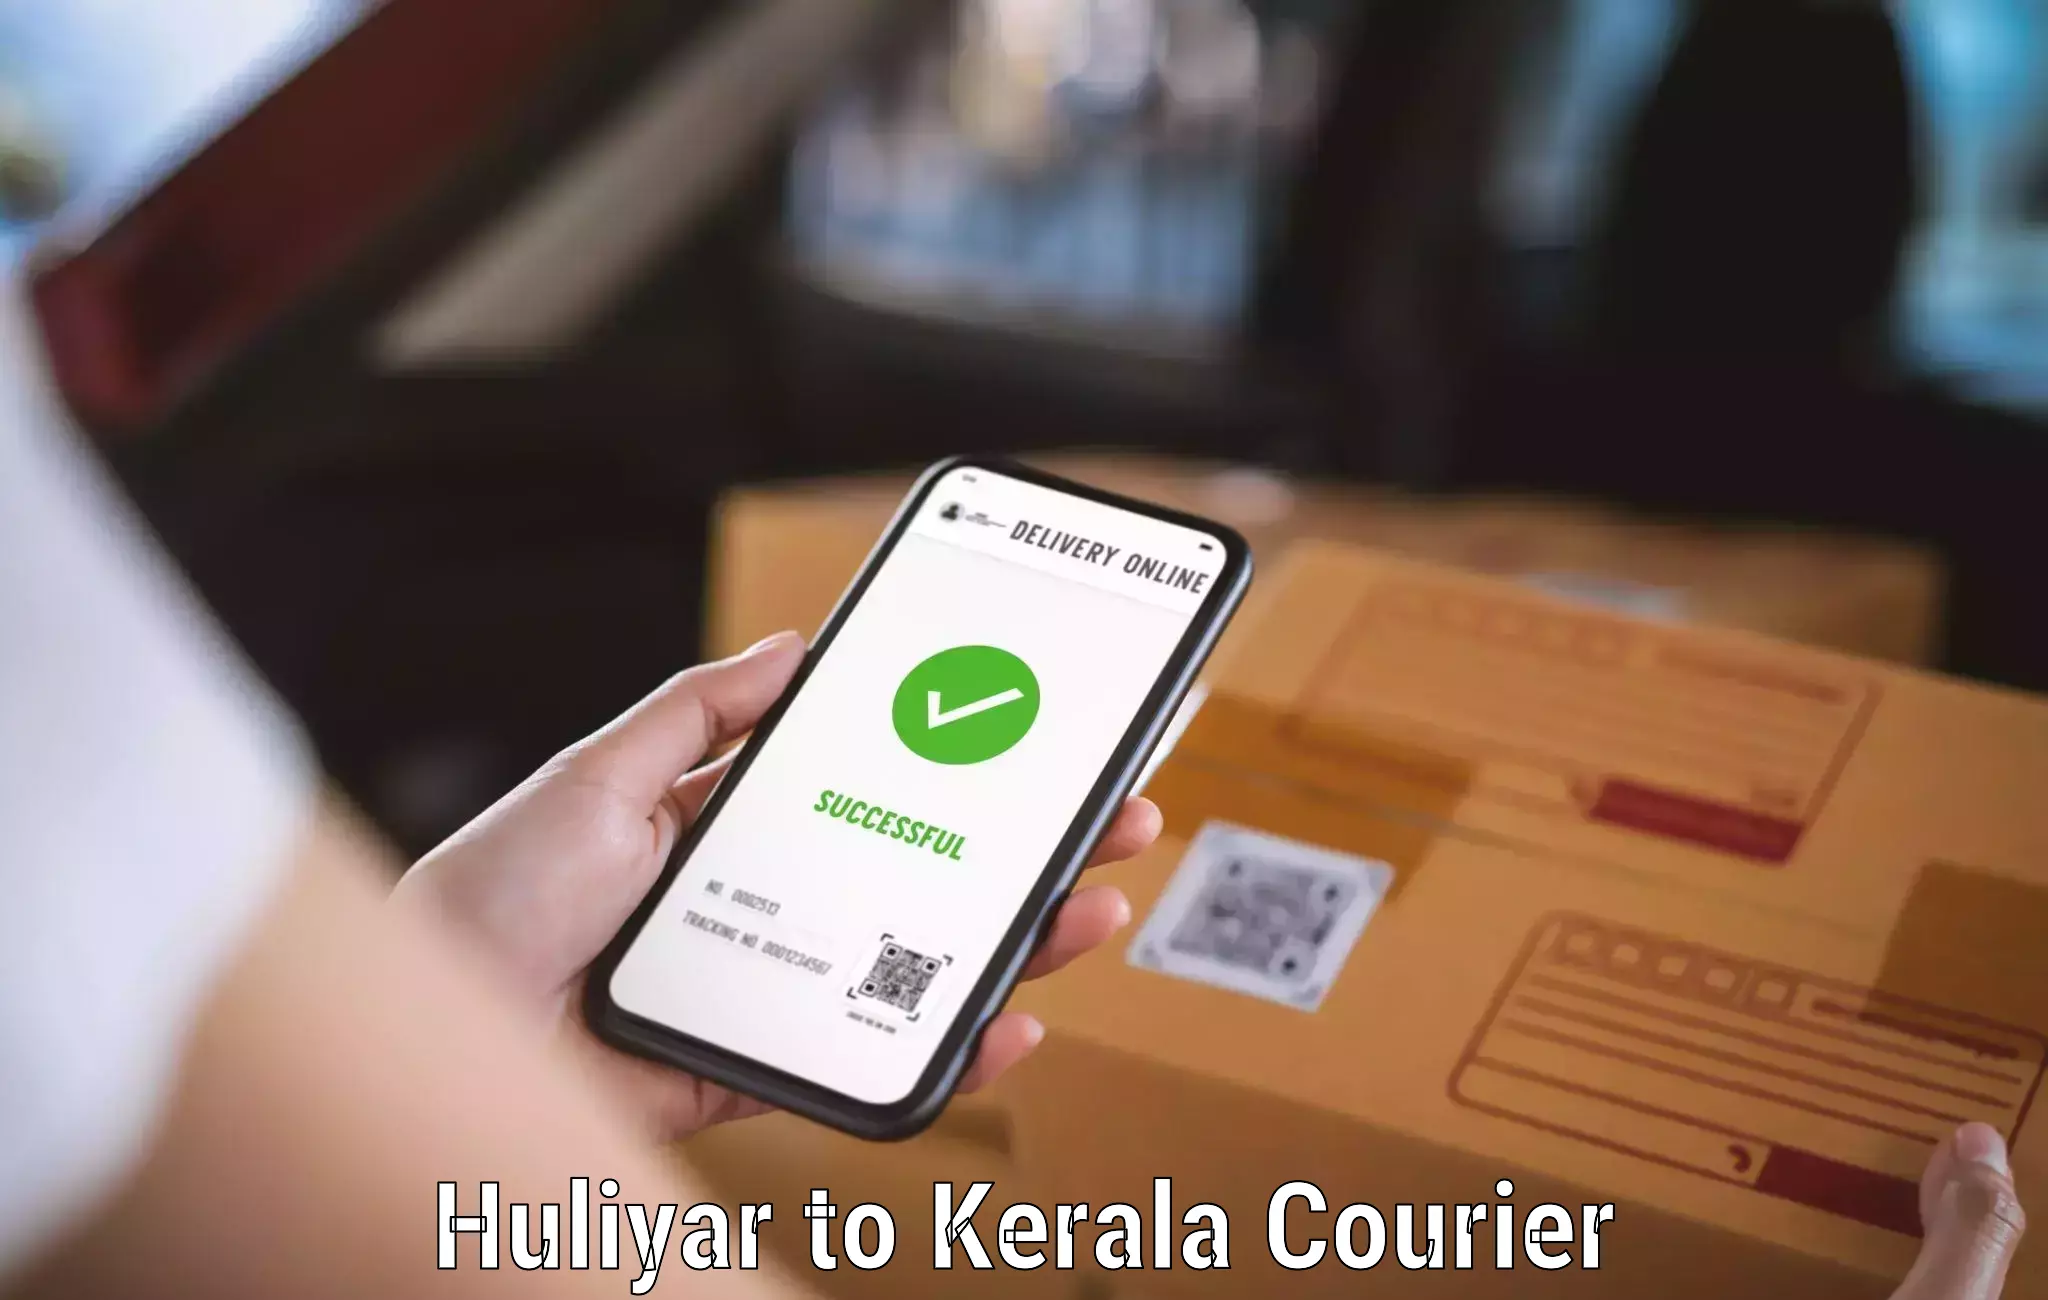 Courier services Huliyar to Tirurangadi